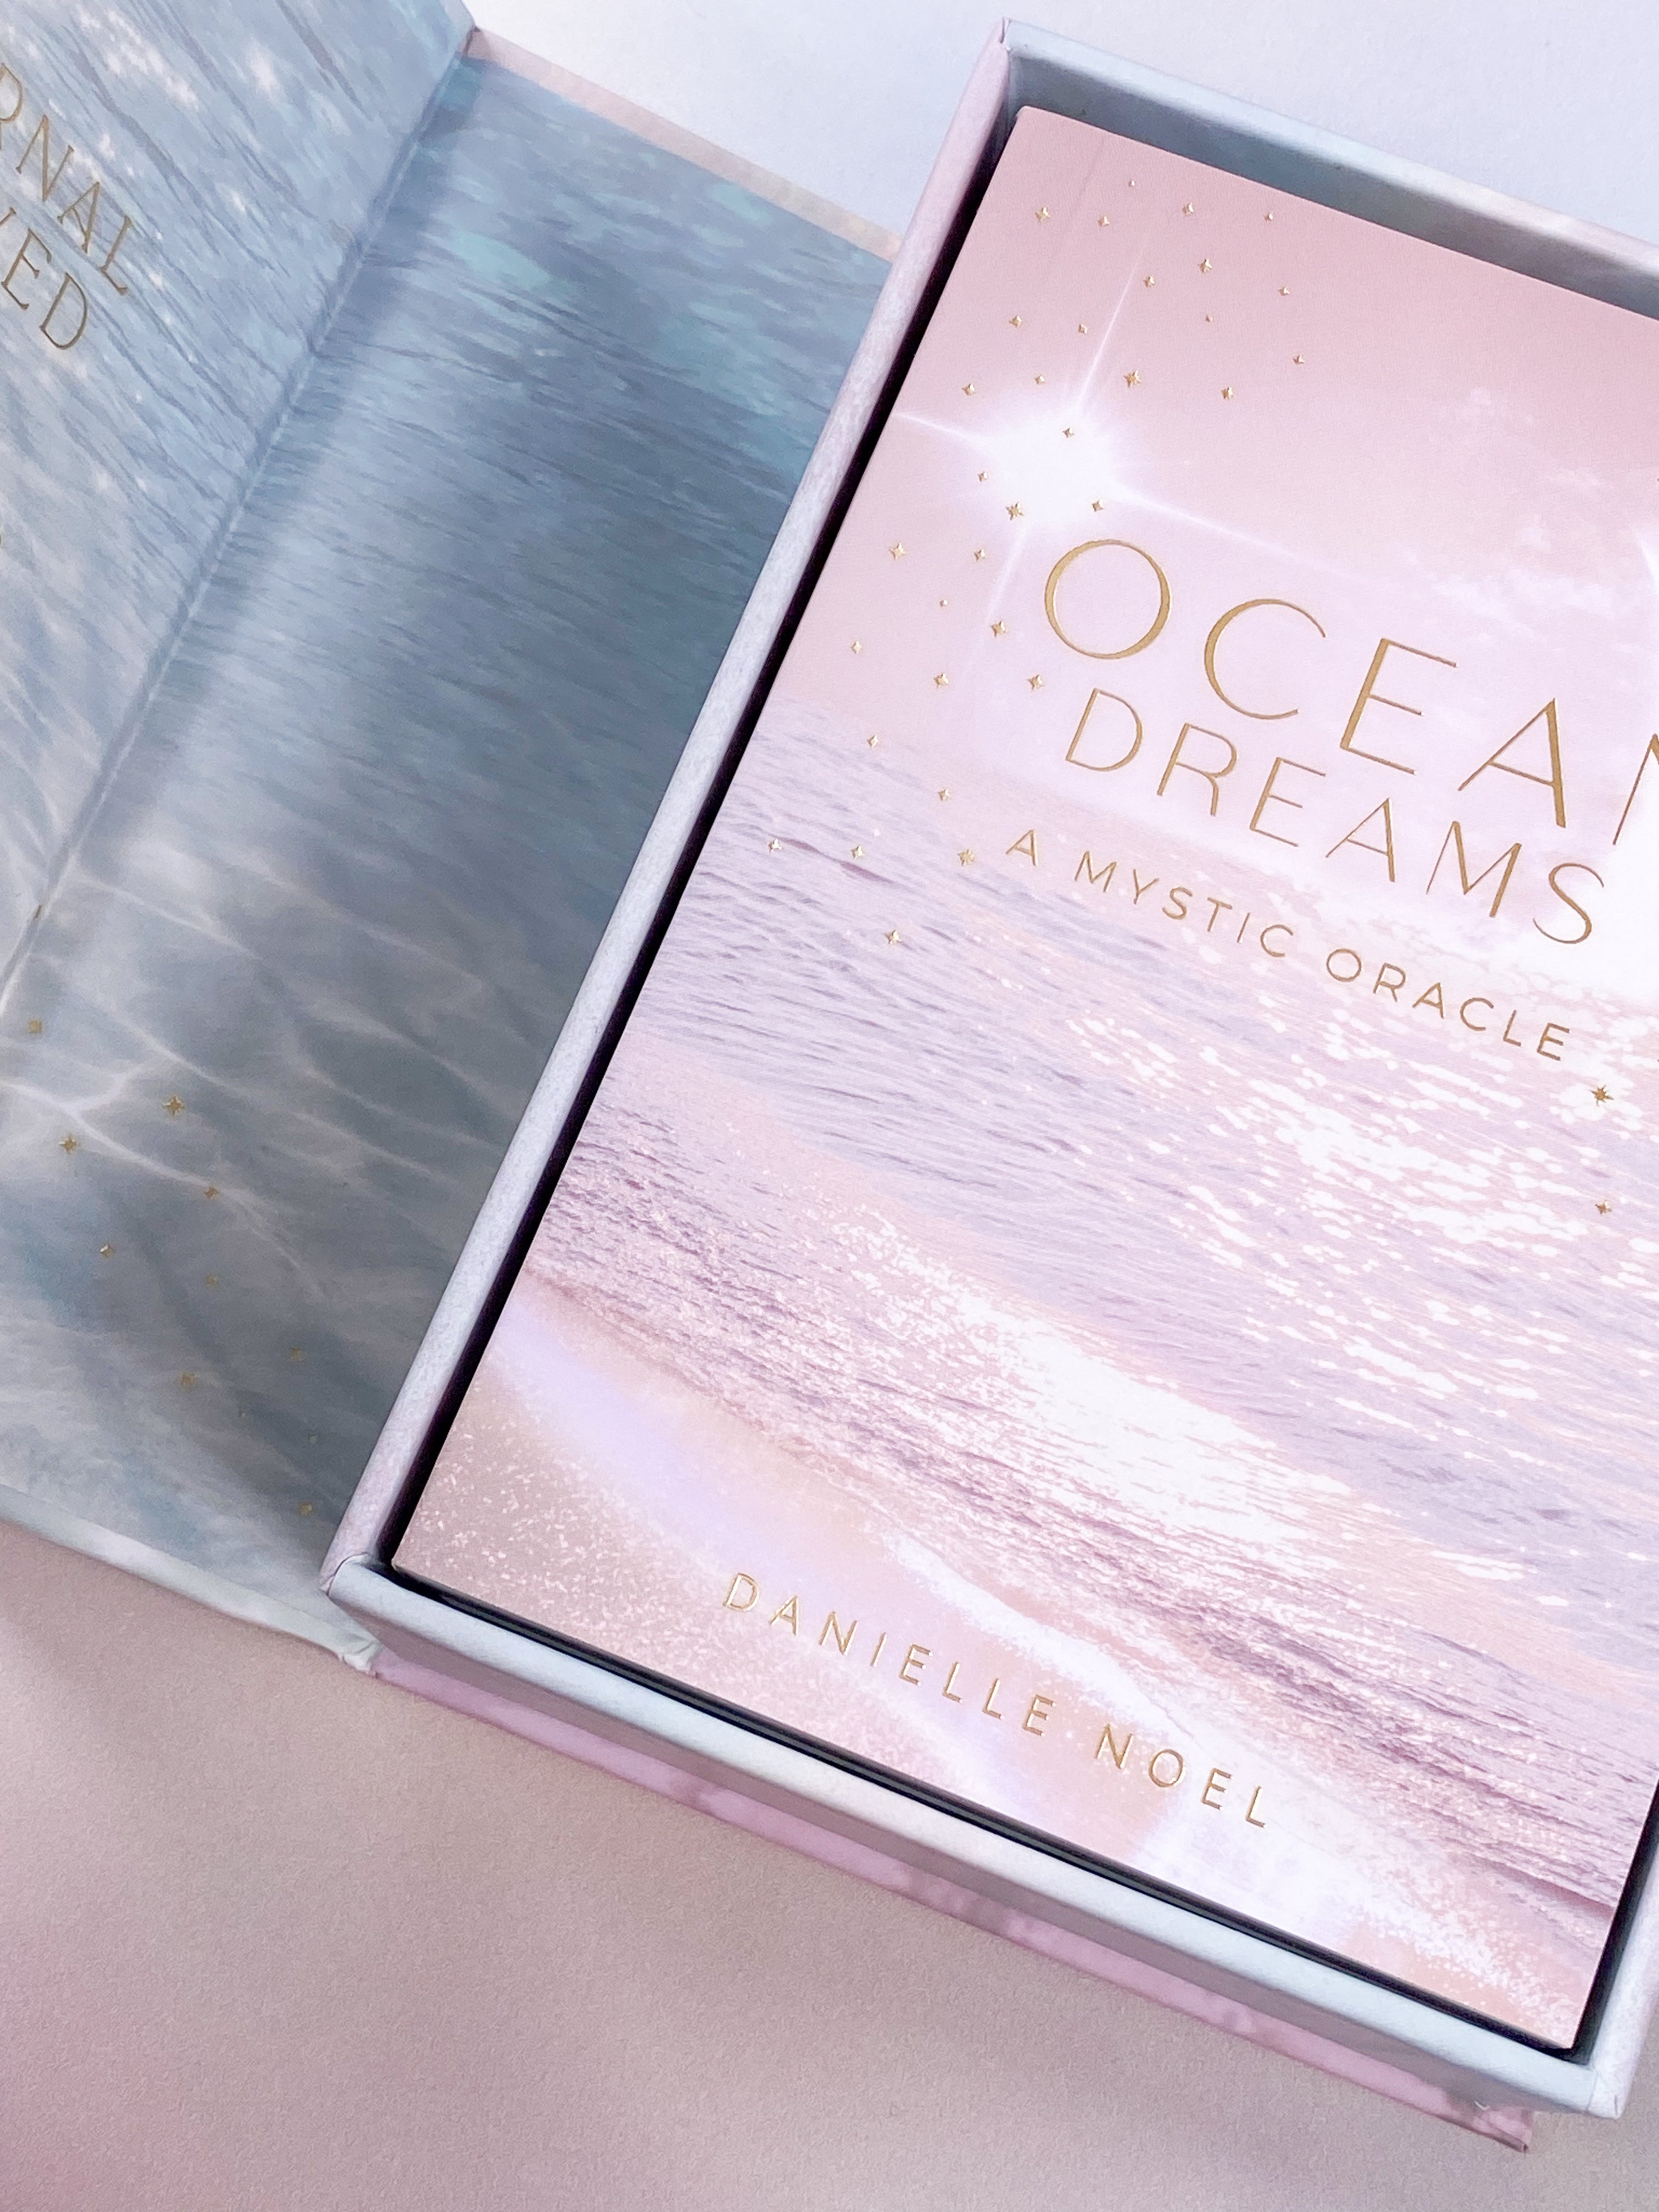 Ocean Dreams - A Mystic Oracle "Orakelkort" af Danielle Noel